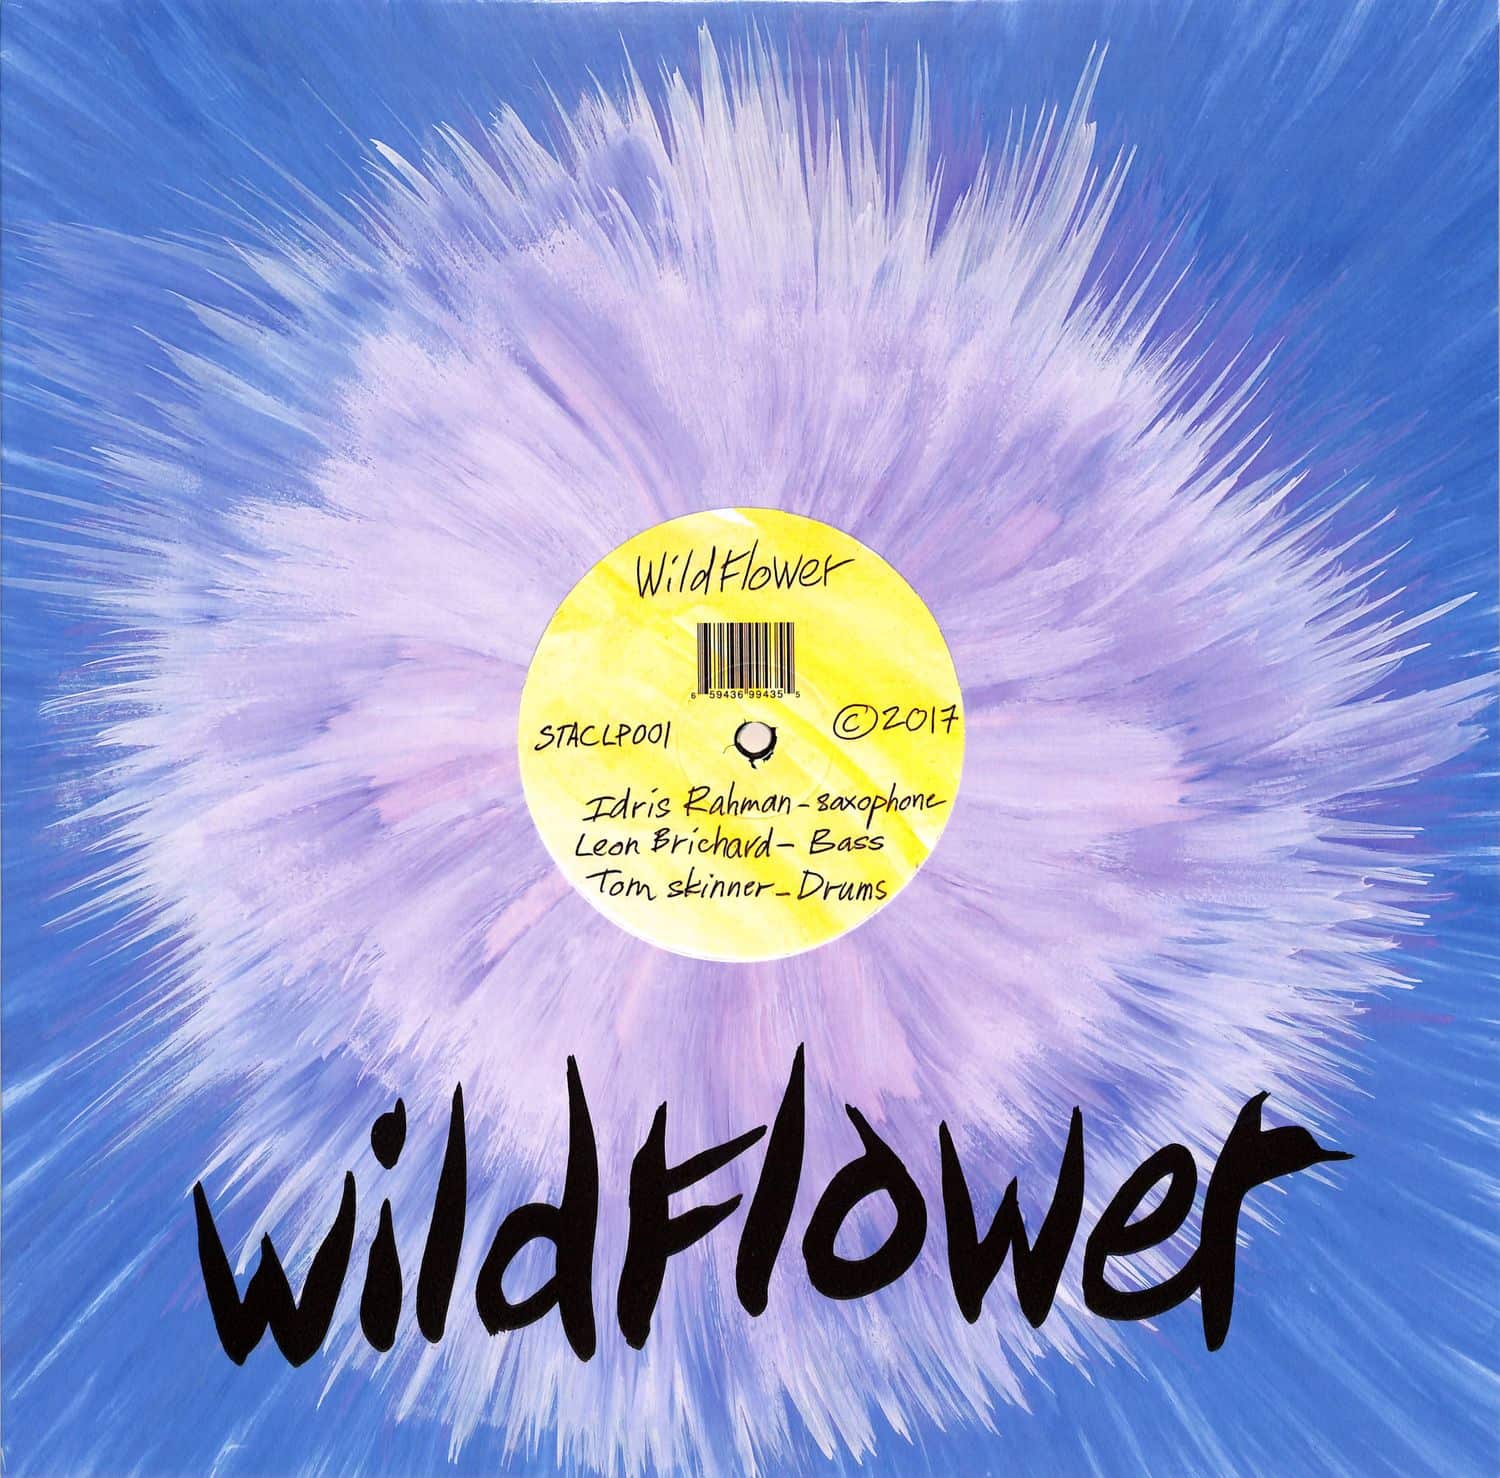 Wildflower - WILDFLOWER